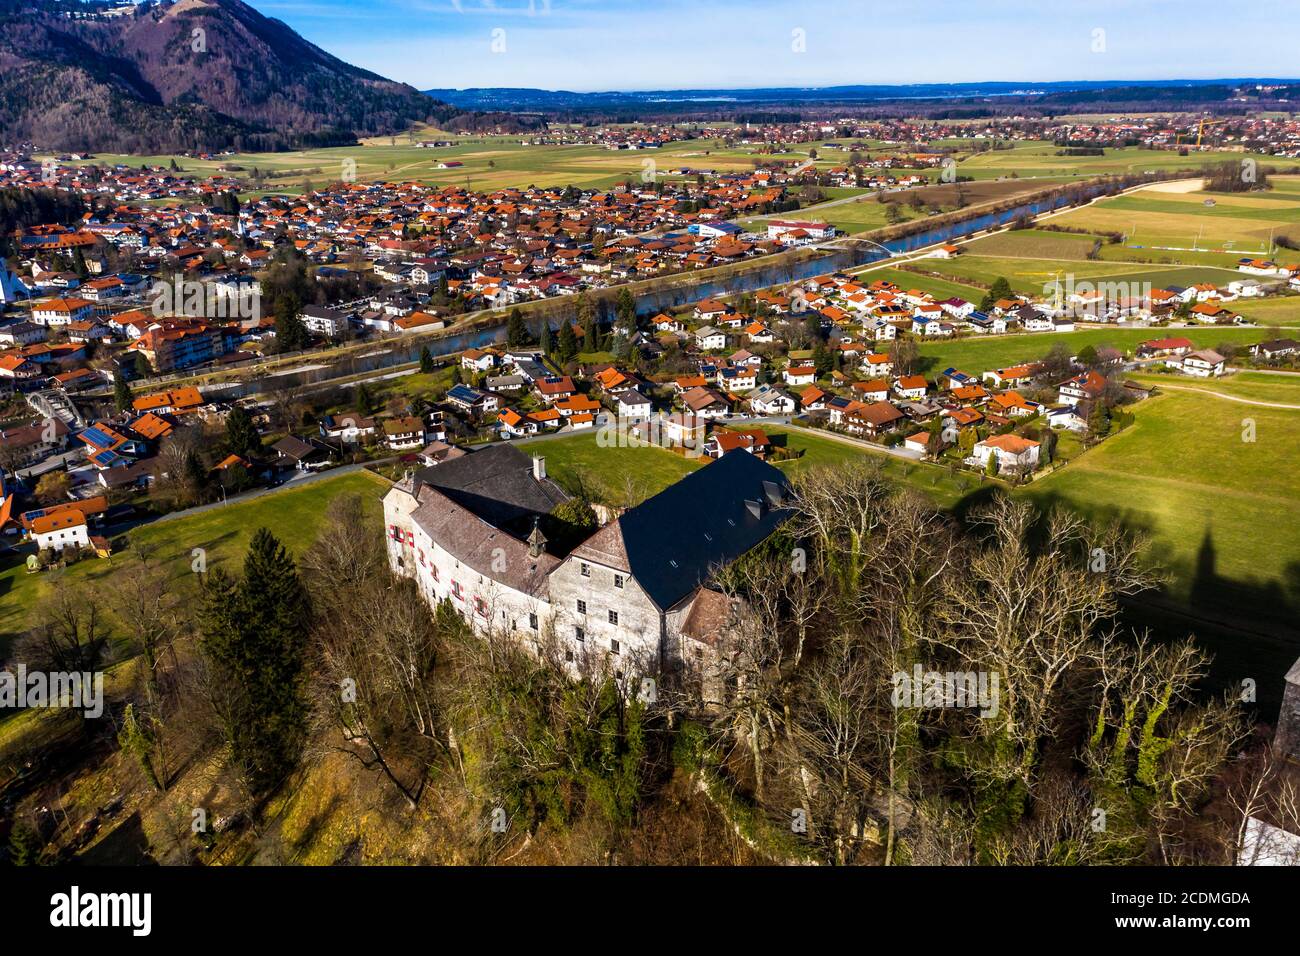 Aerial view, Marquartstein Castle, medieval hilltop castle, Tiroler Achen, Marquartstein Upper Bavarian district of Traunstein, Germany Stock Photo